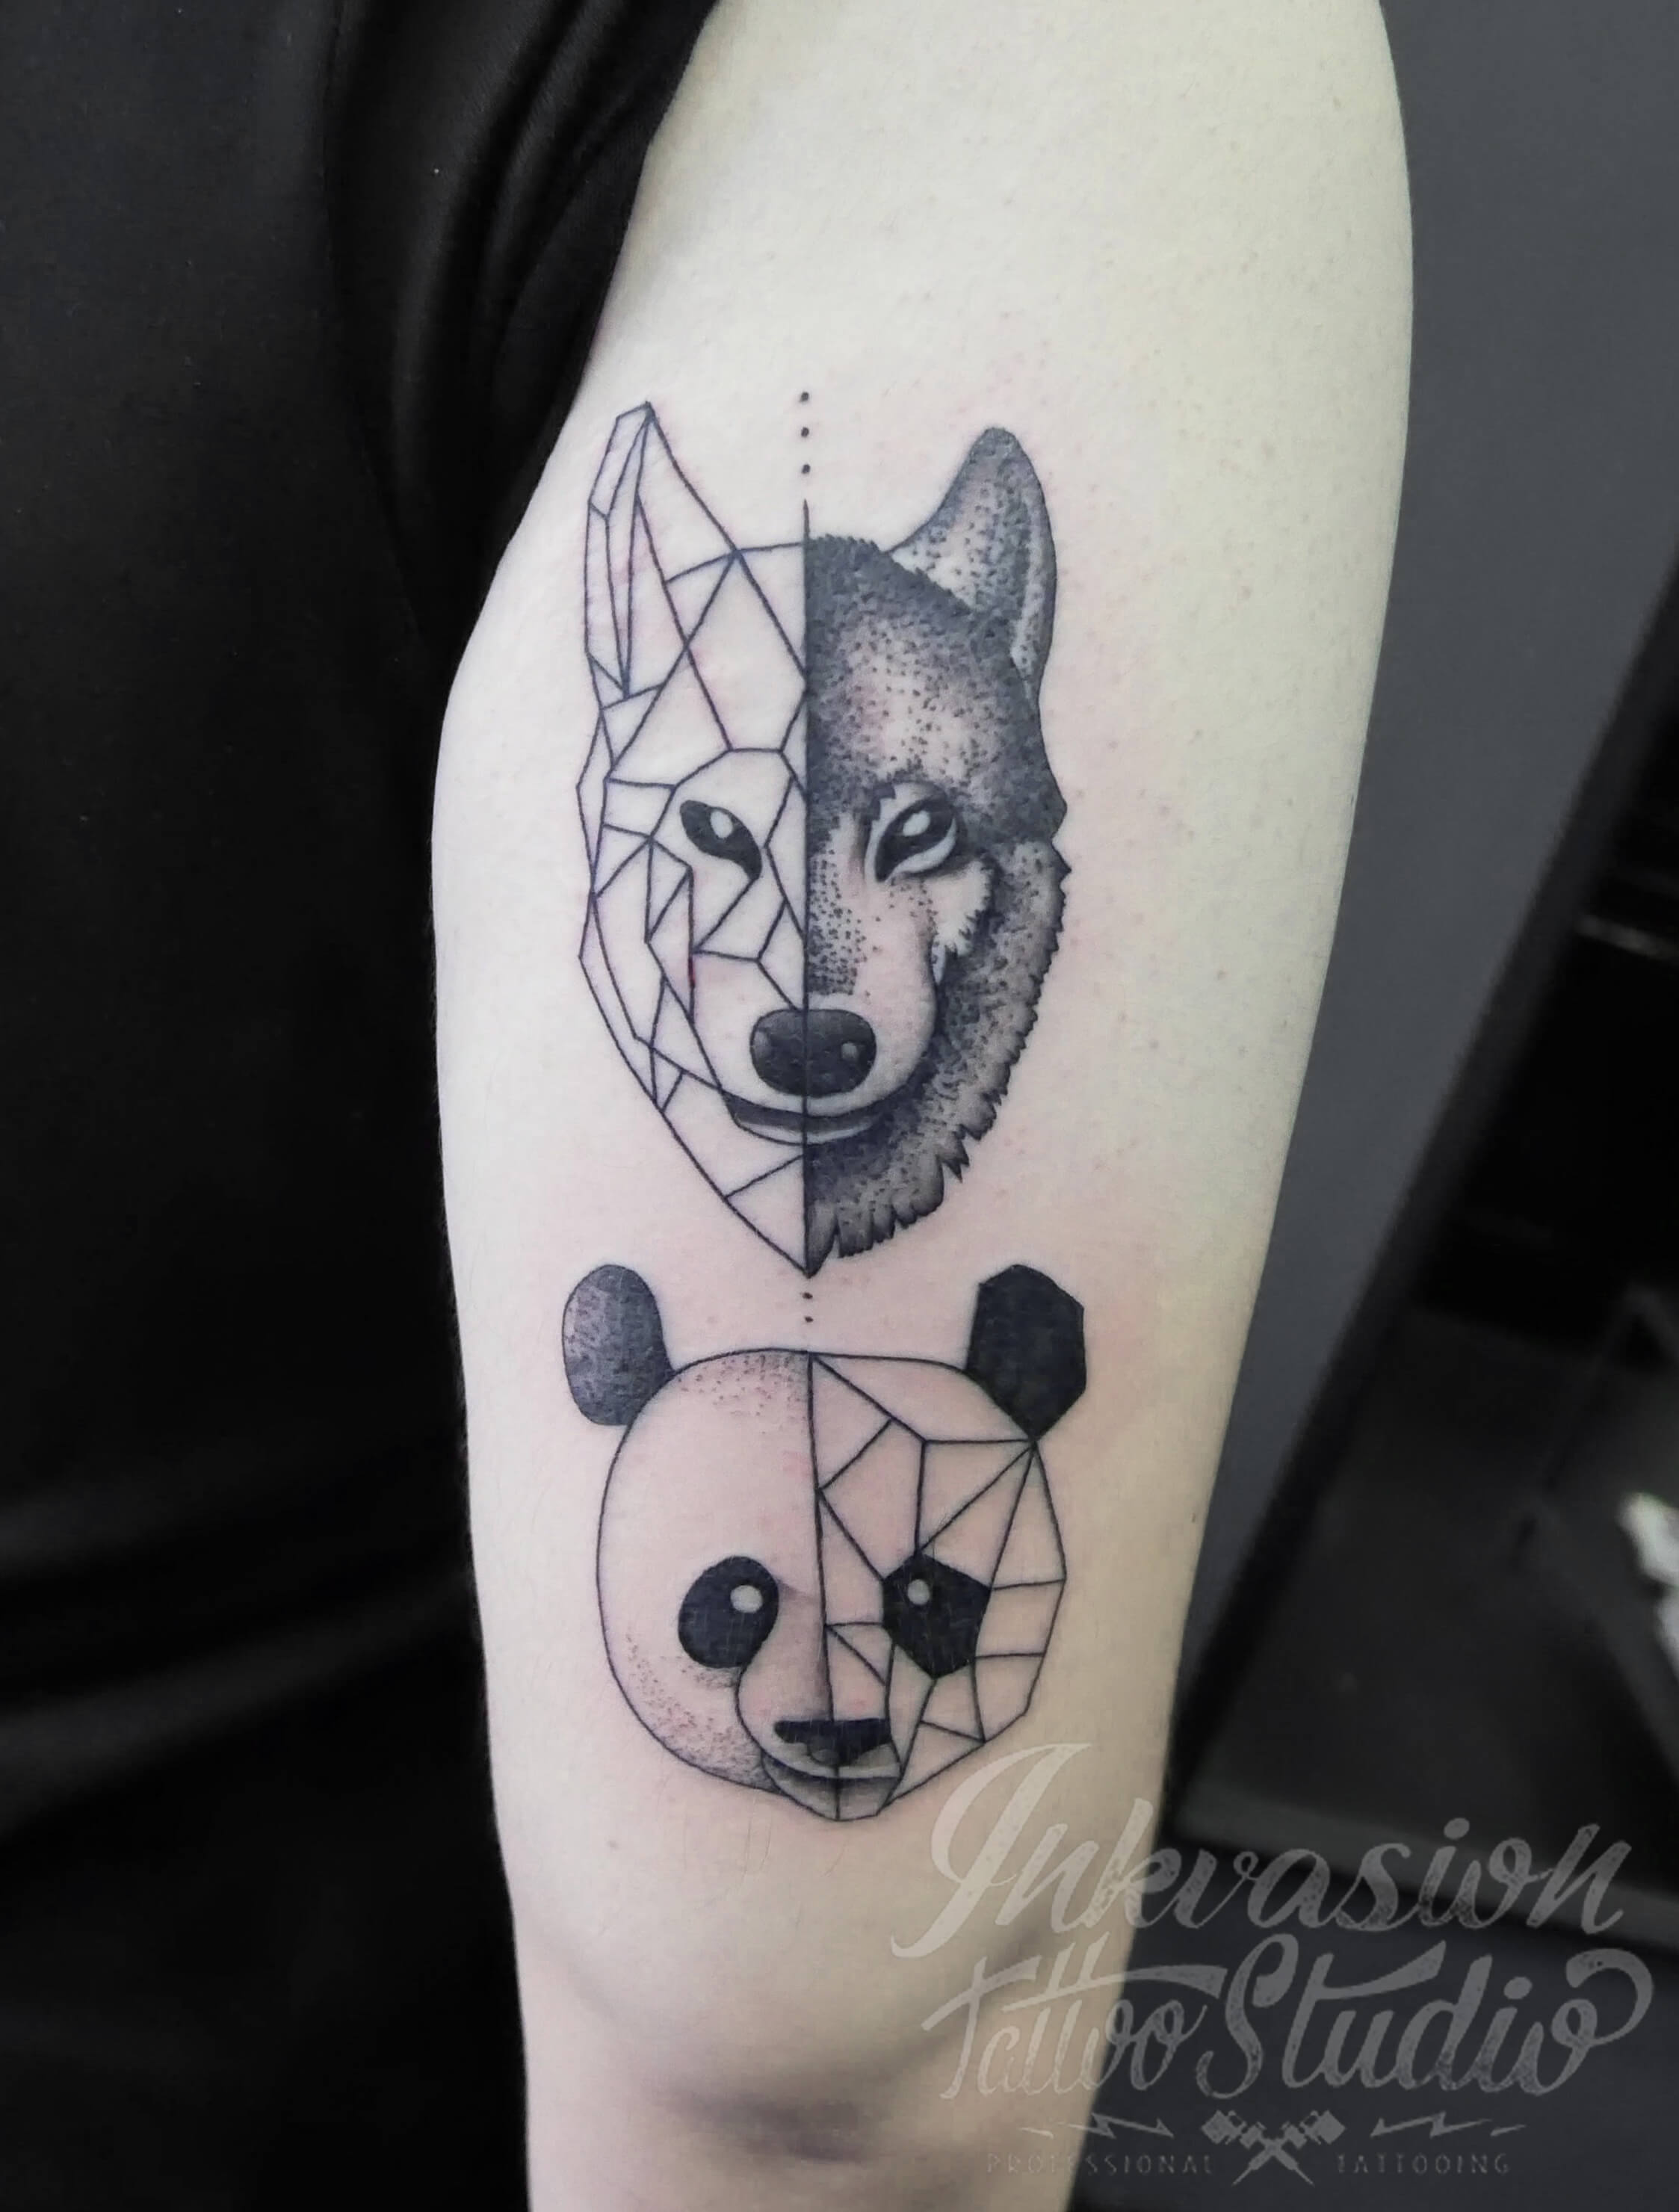 ONIXX Tattoos  Piercings  Fun geometric panda  Facebook